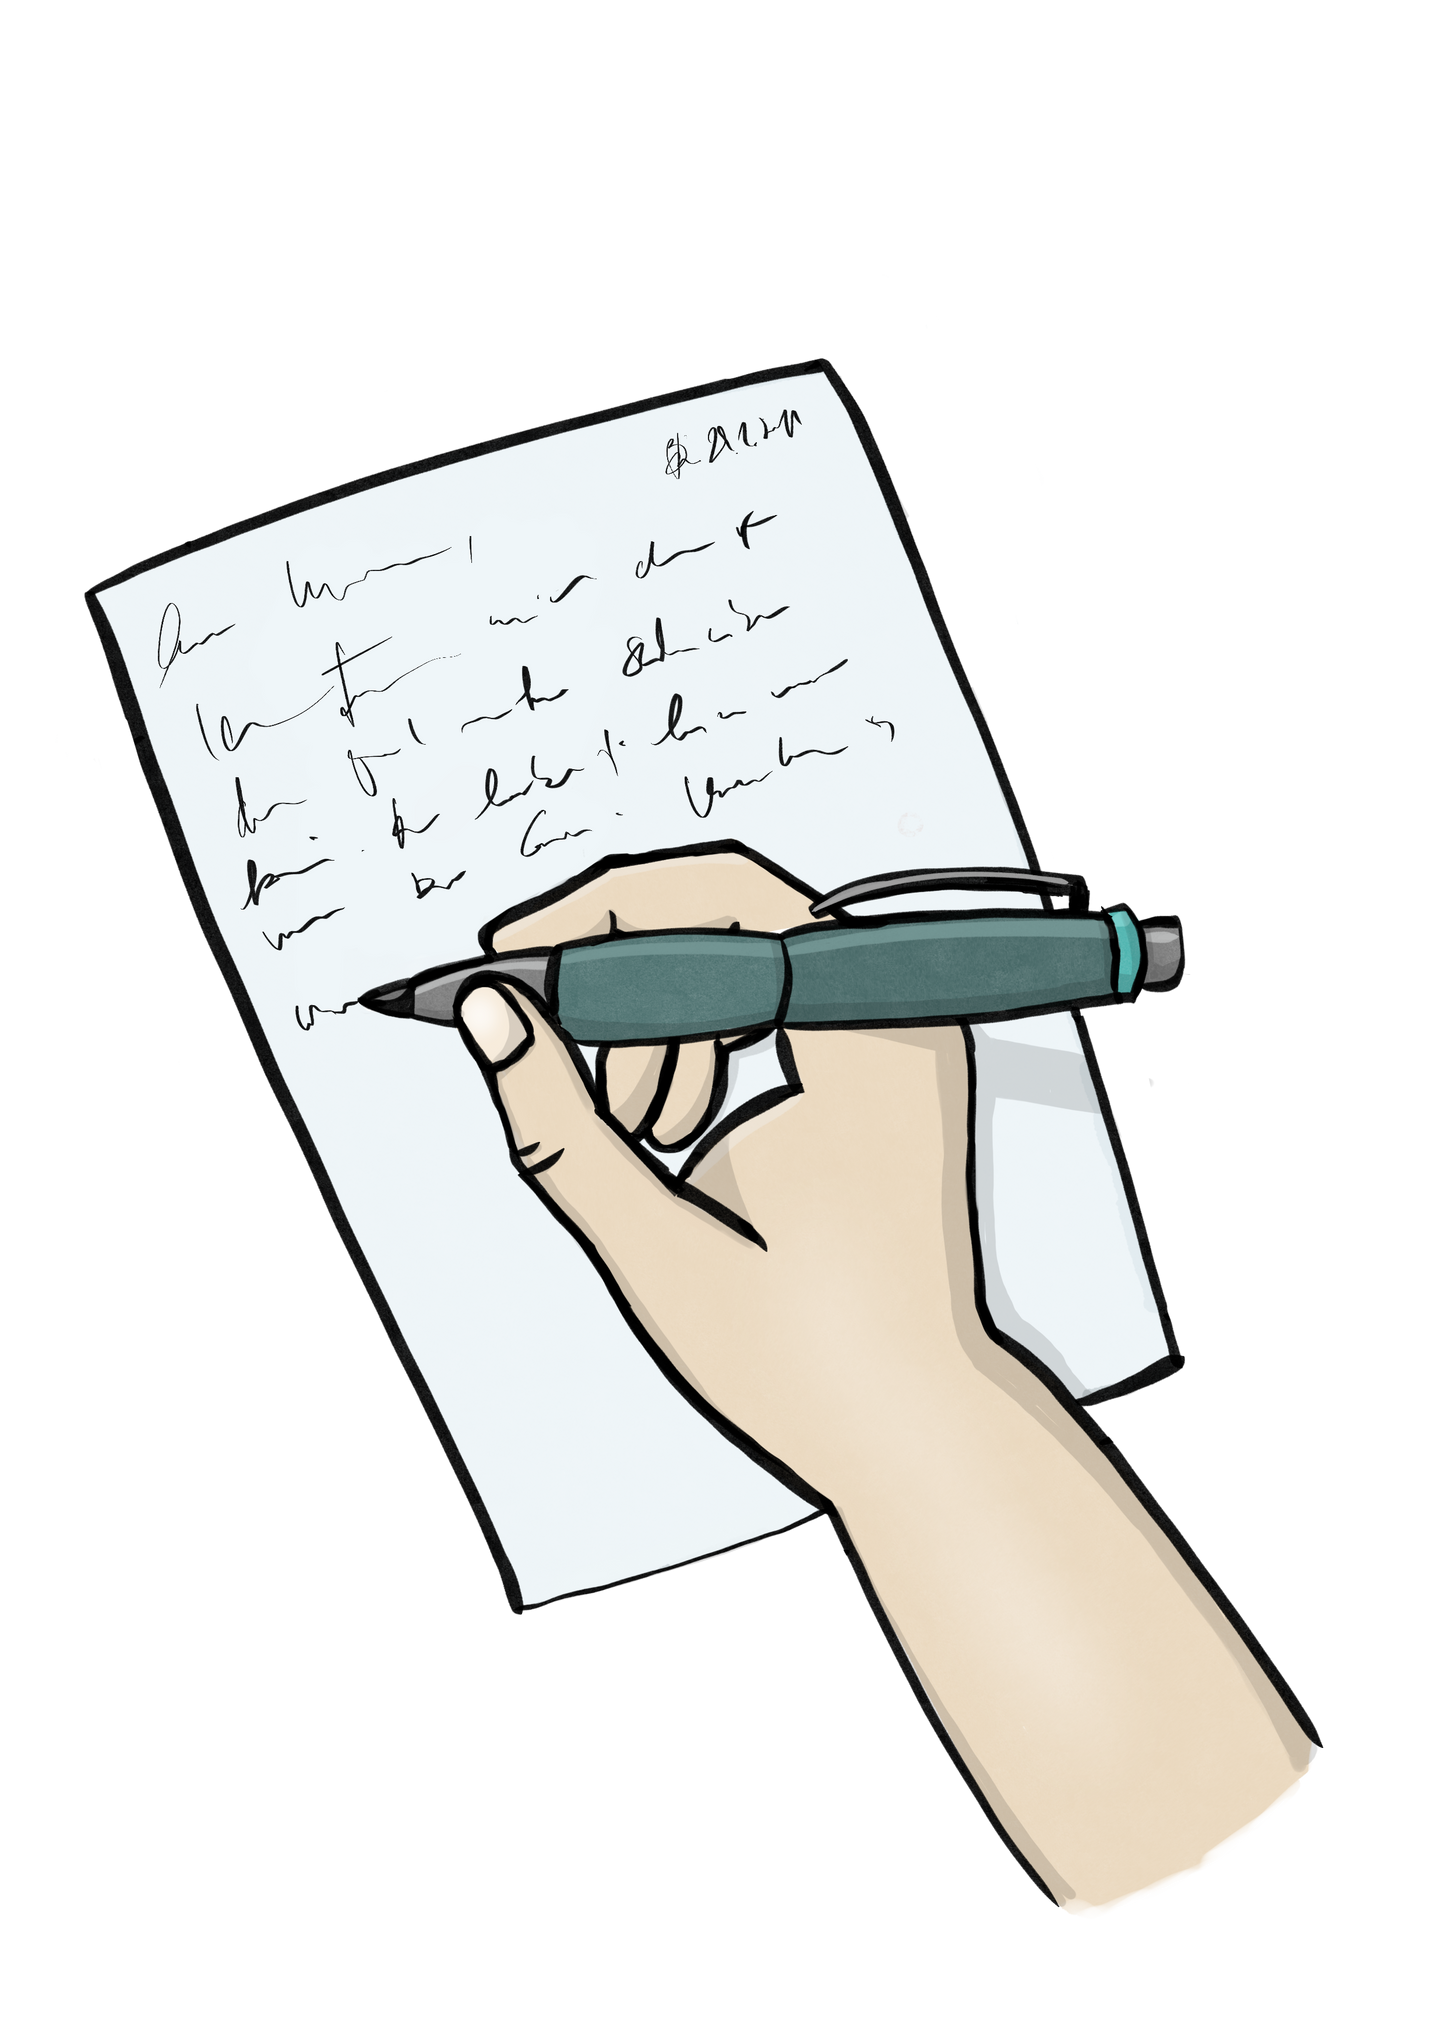 Eine Hand schreibt mit einem Kugelschreiber etwas auf ein Blatt Papier.